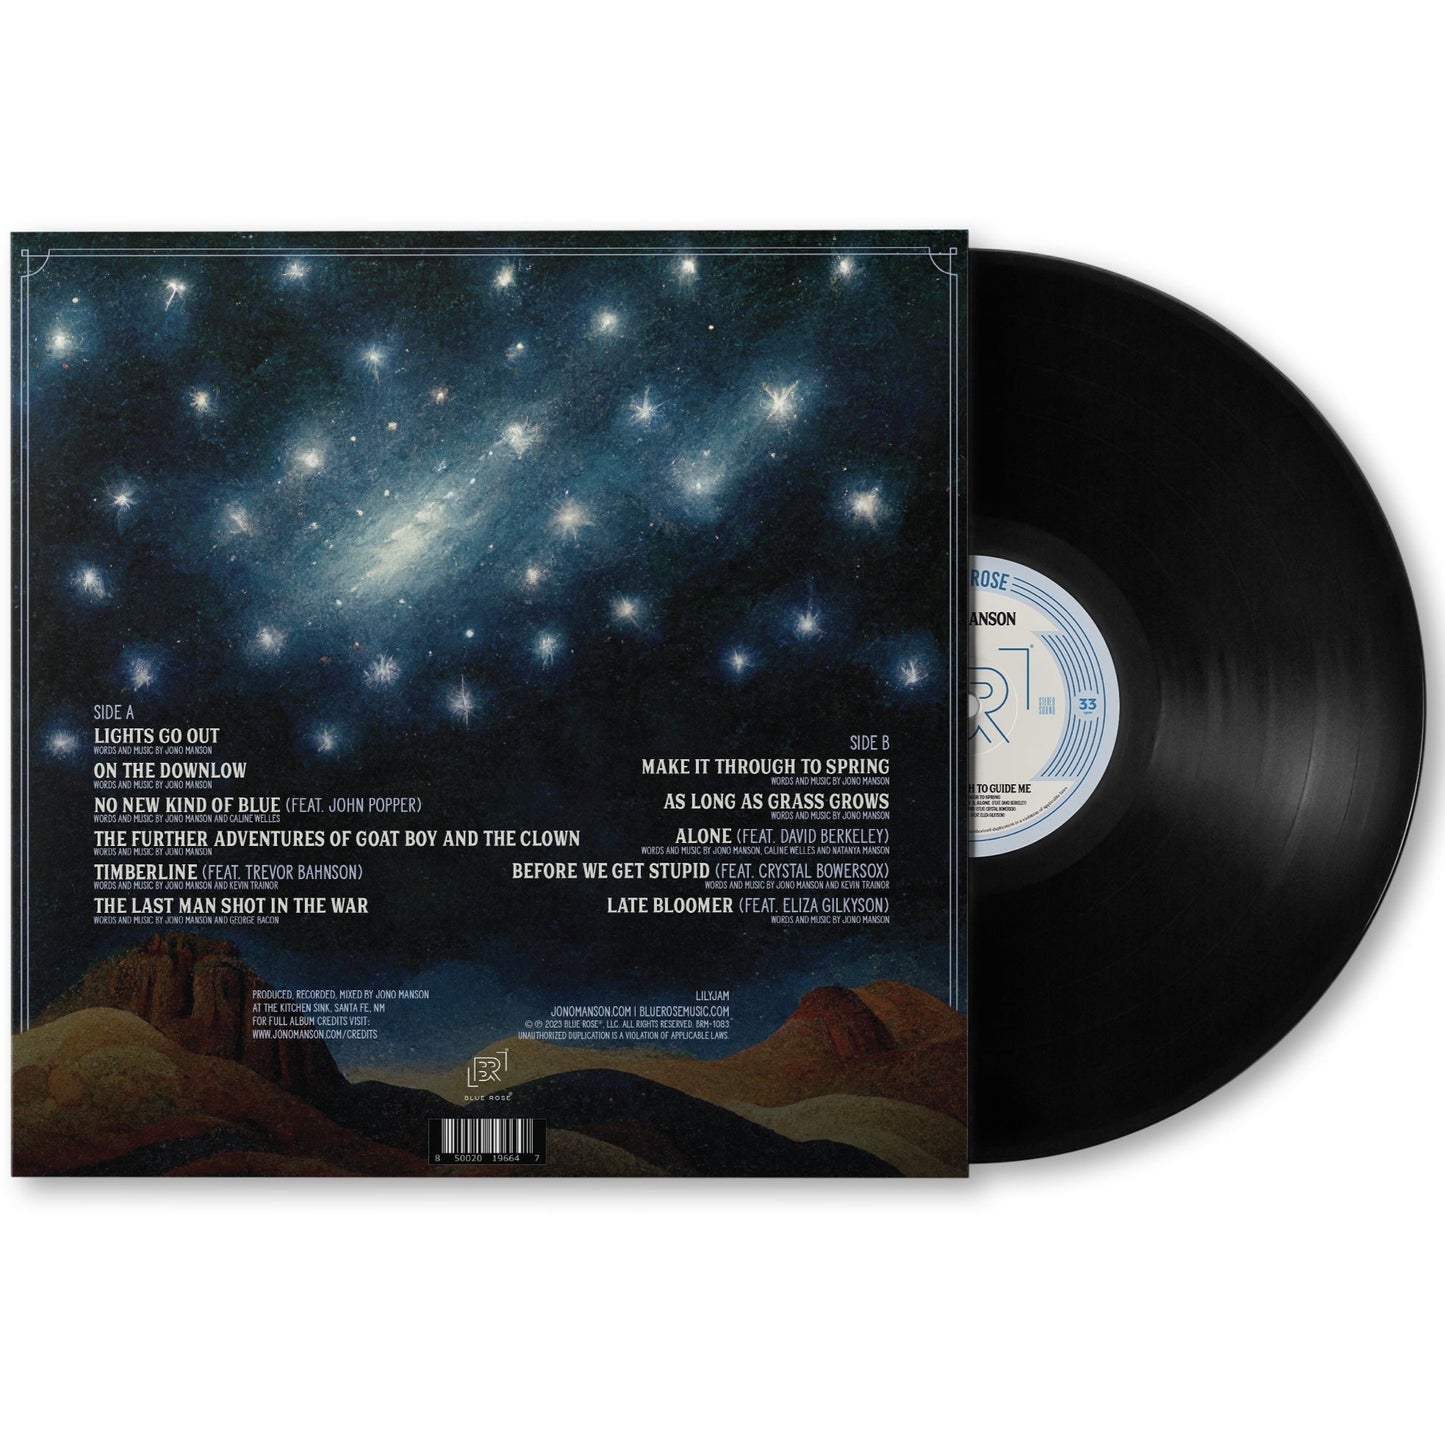 Jono Manson "Stars Enough To Guide Me" Vinyl